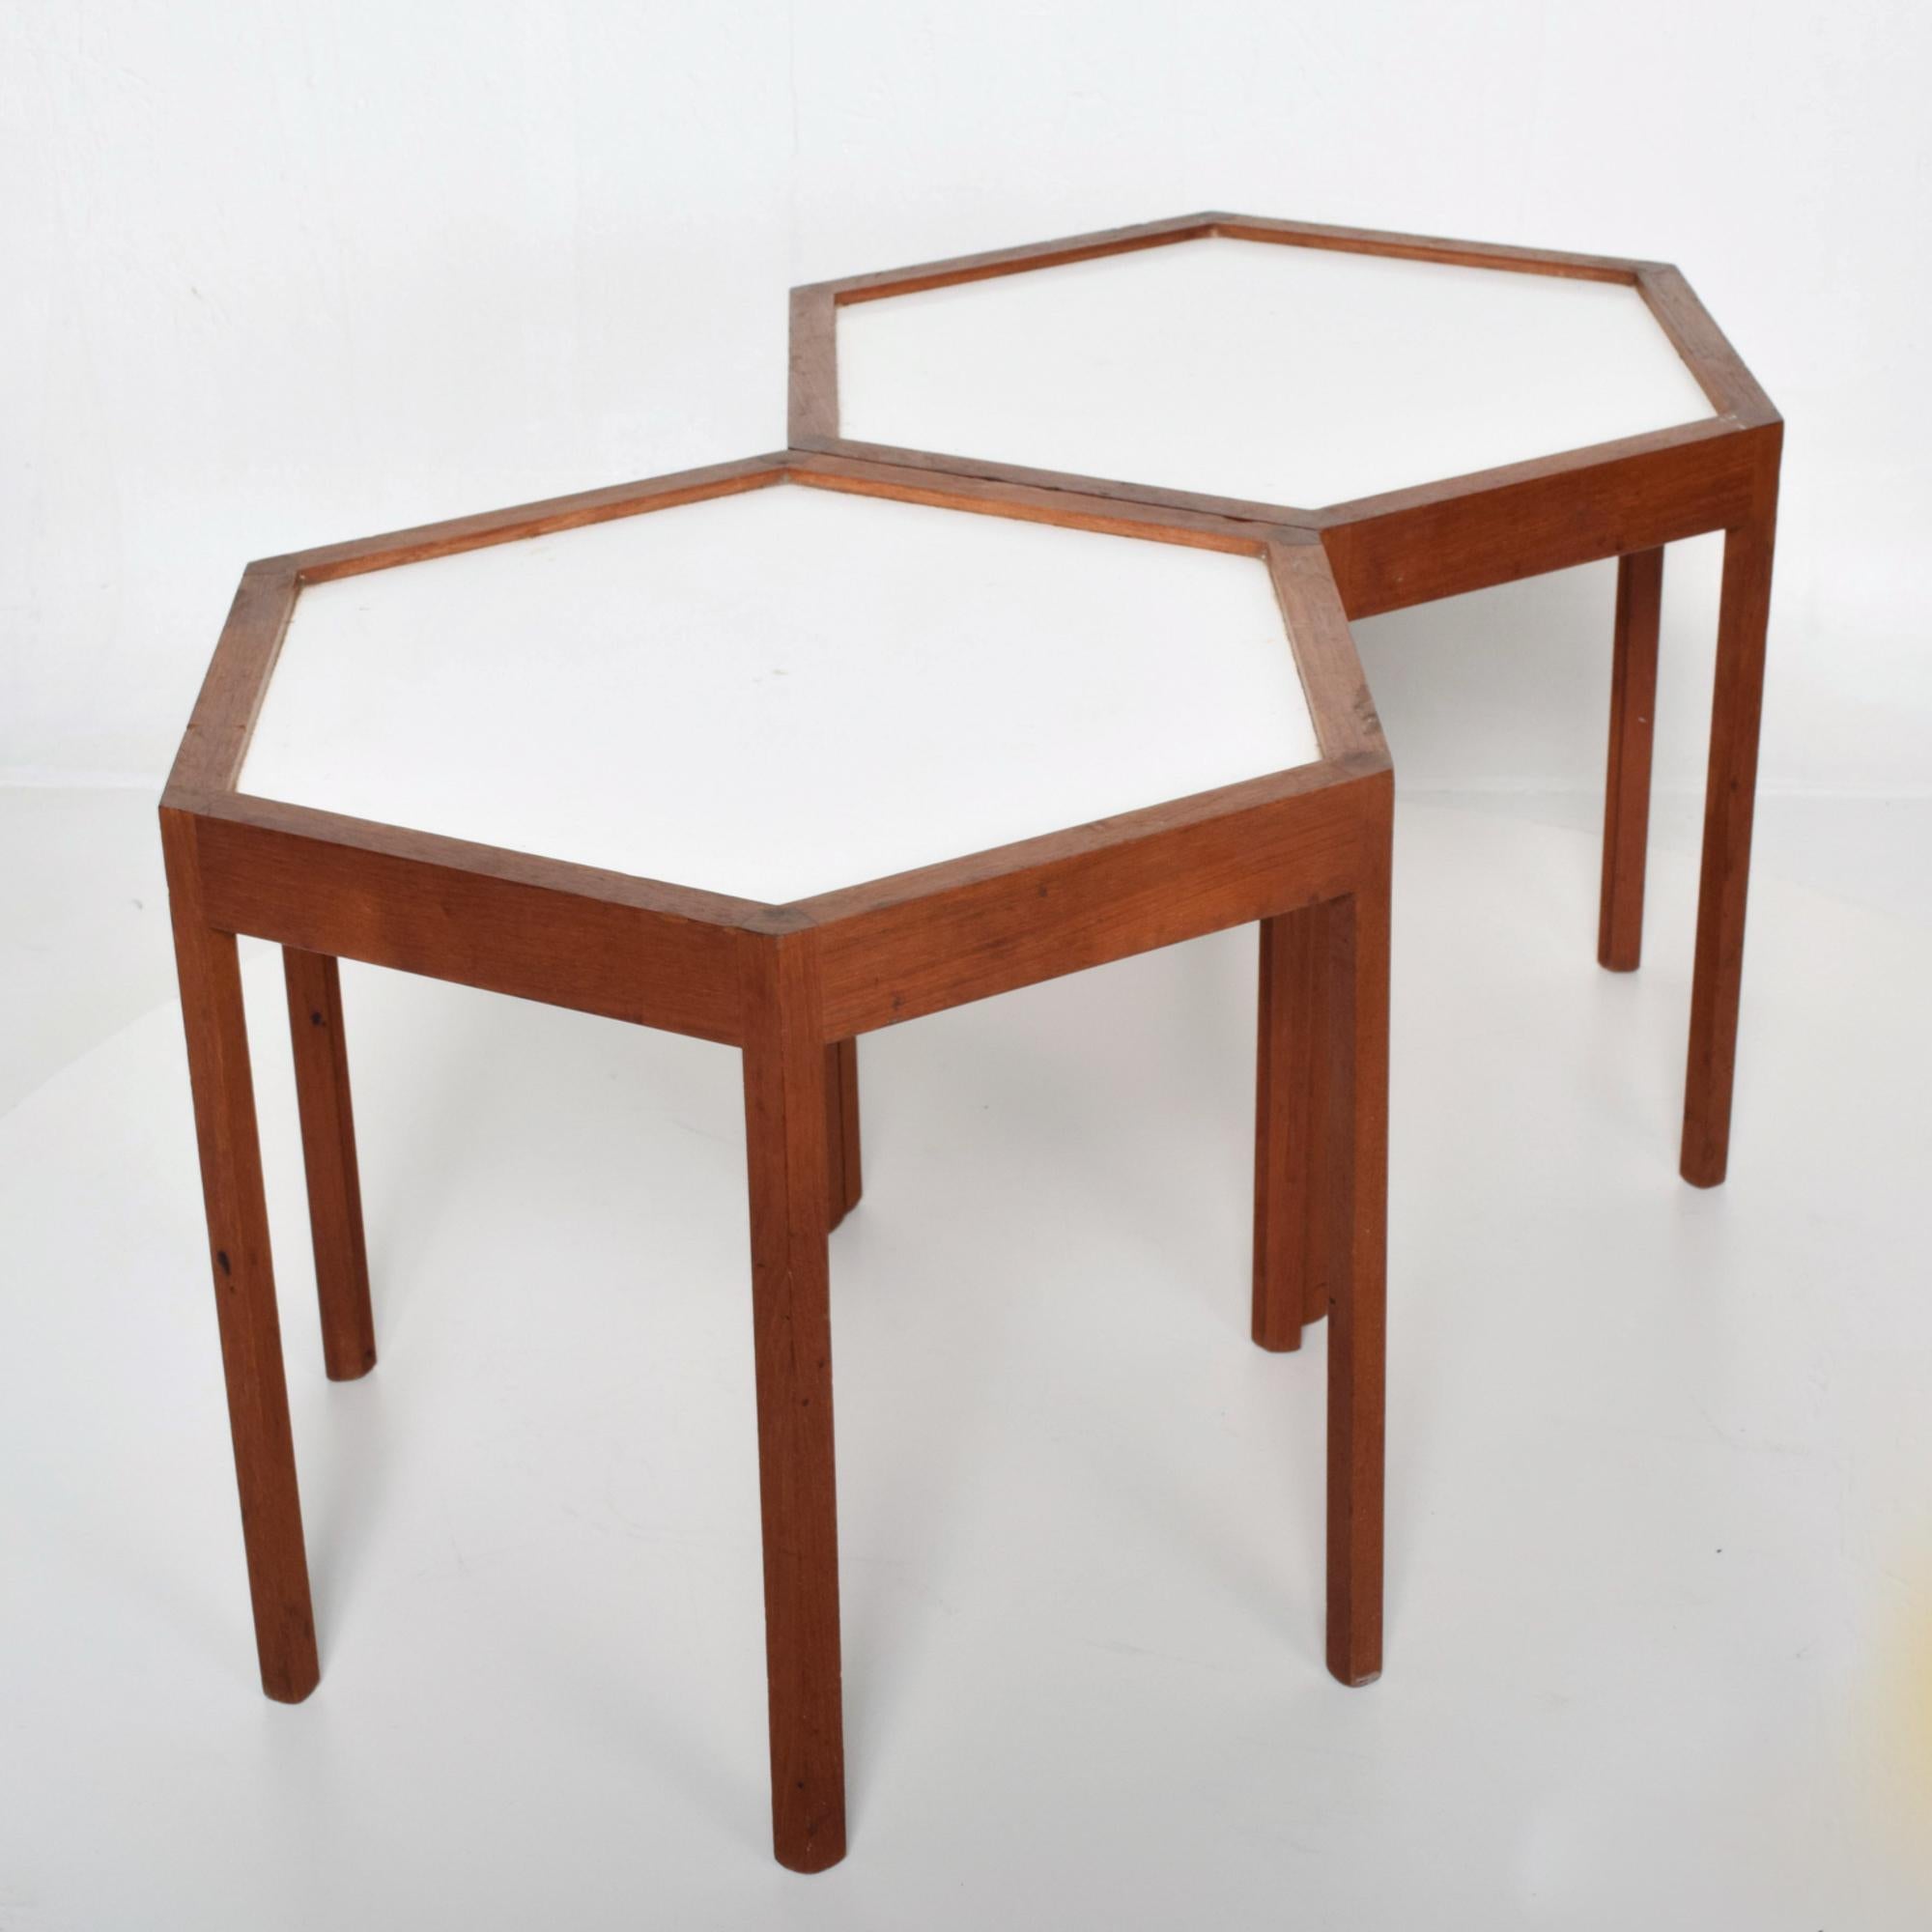 Mid-Century Modern White Hexagonal Solid Teak Side Tables by Hans C Andersen 1960s Denmark